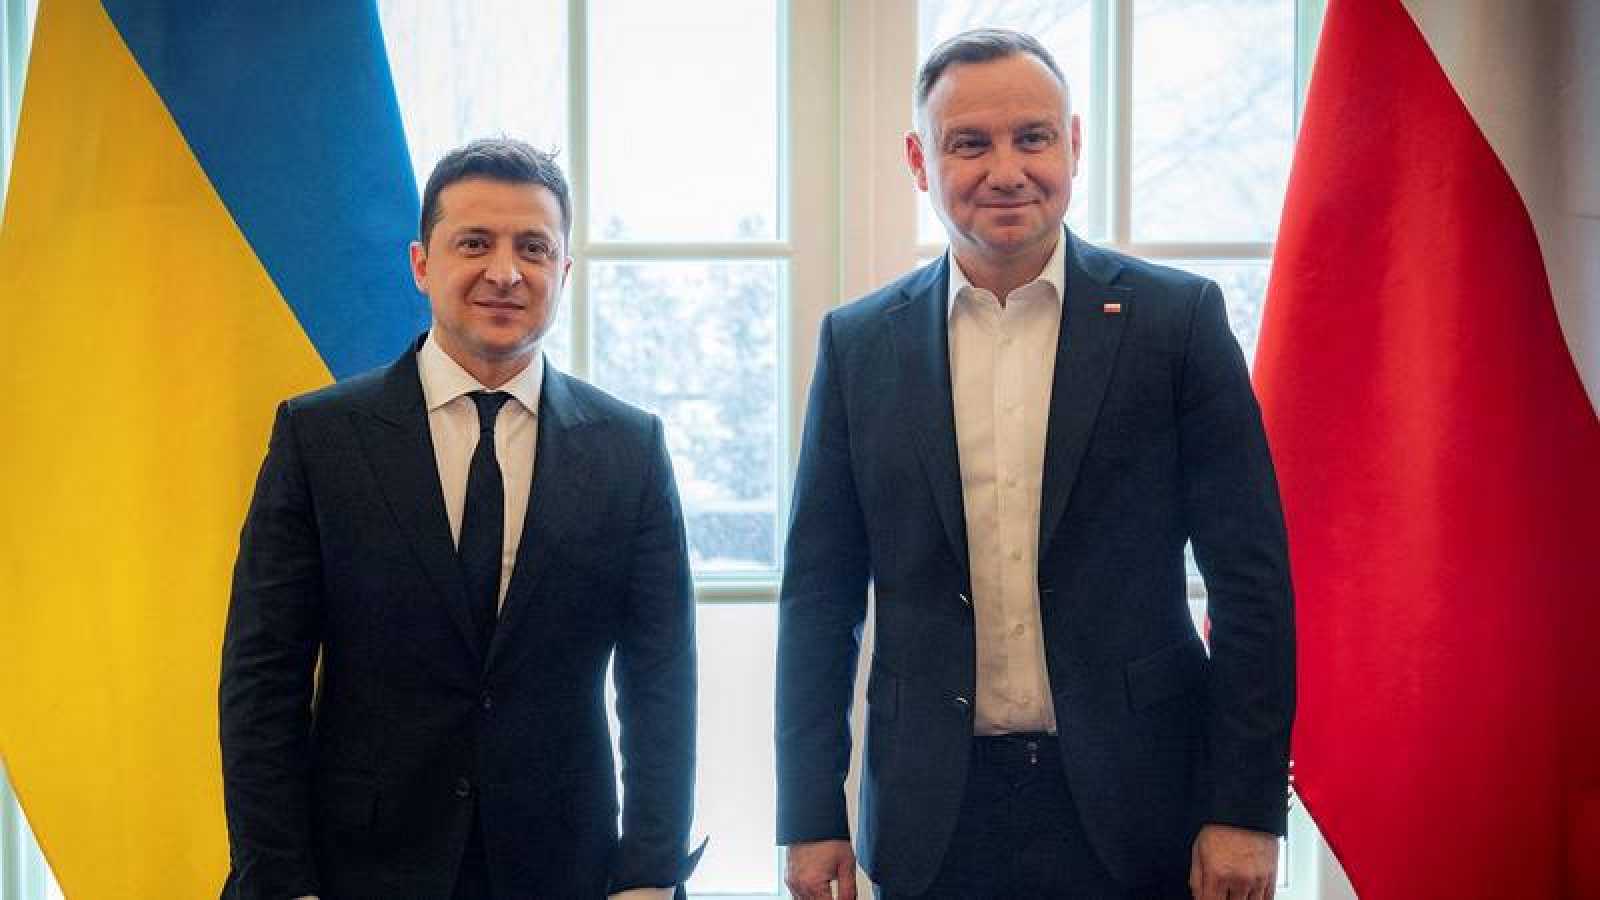 Polonia apoyará la reconstrucción de Ucrania